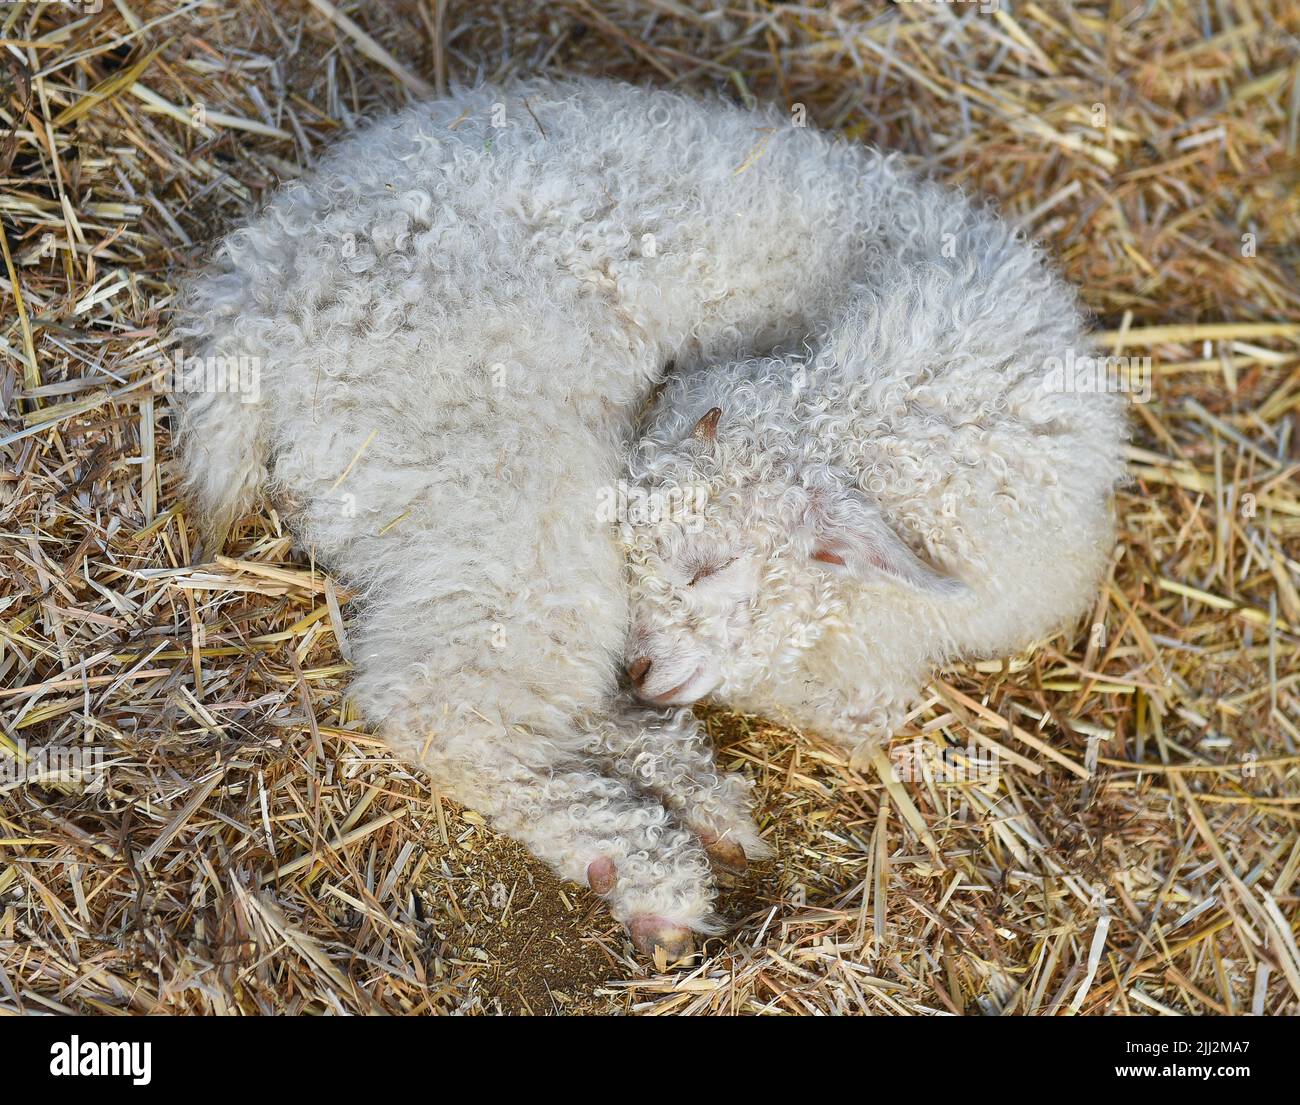 Mujer de dos meses de edad Angora Cabra dormida en el heno. Foto de stock